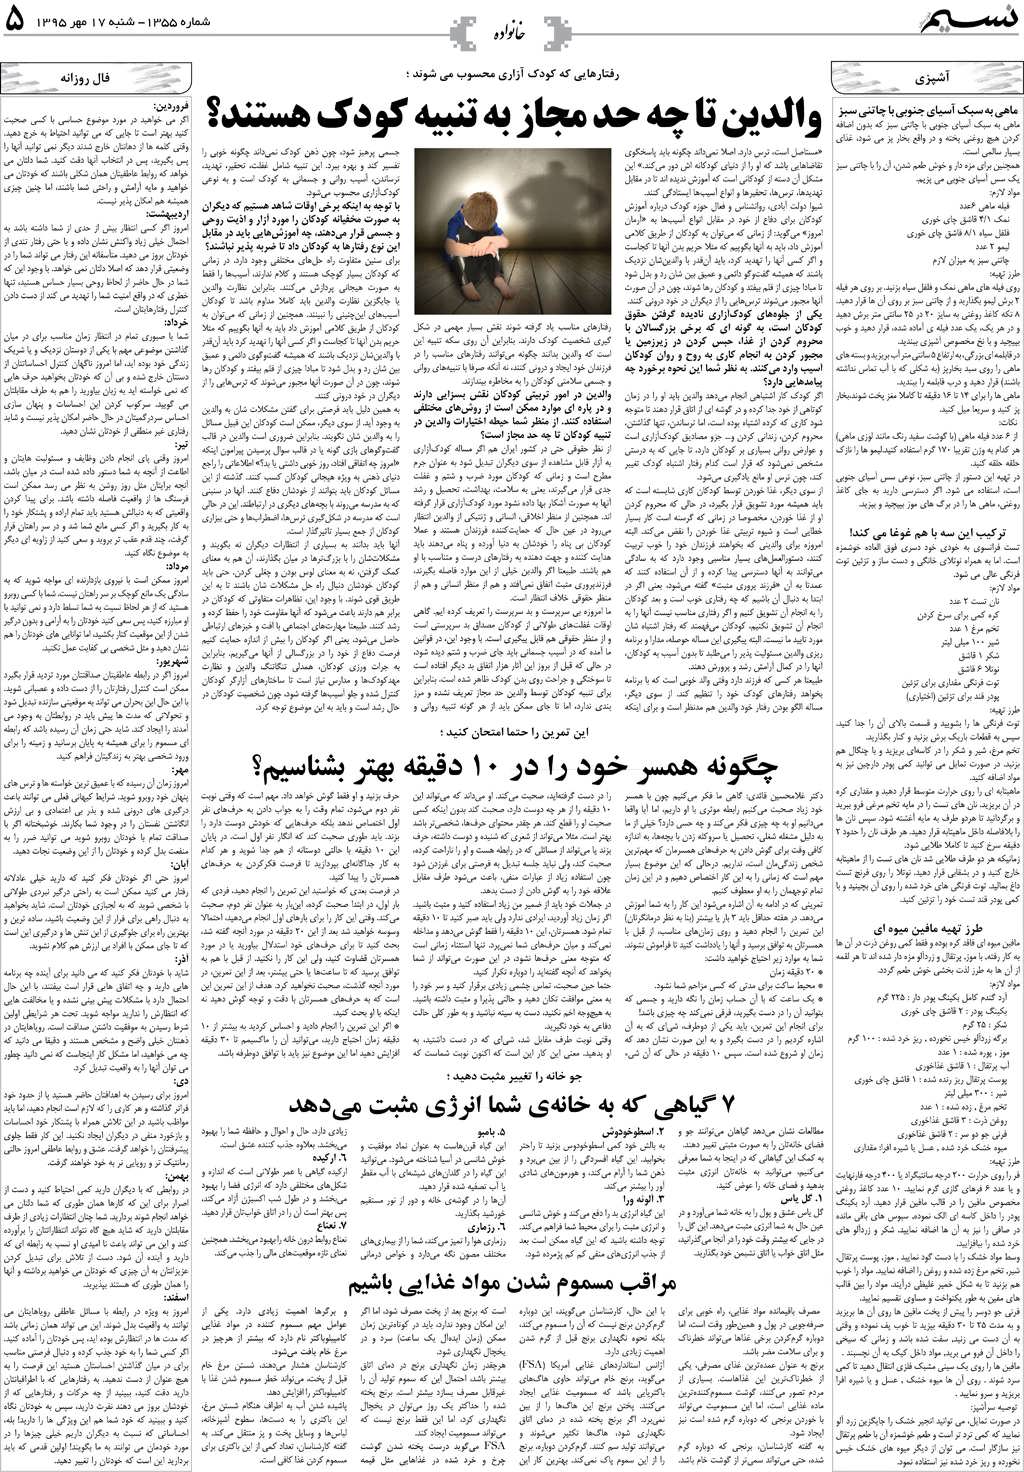 صفحه خانواده روزنامه نسیم شماره 1355